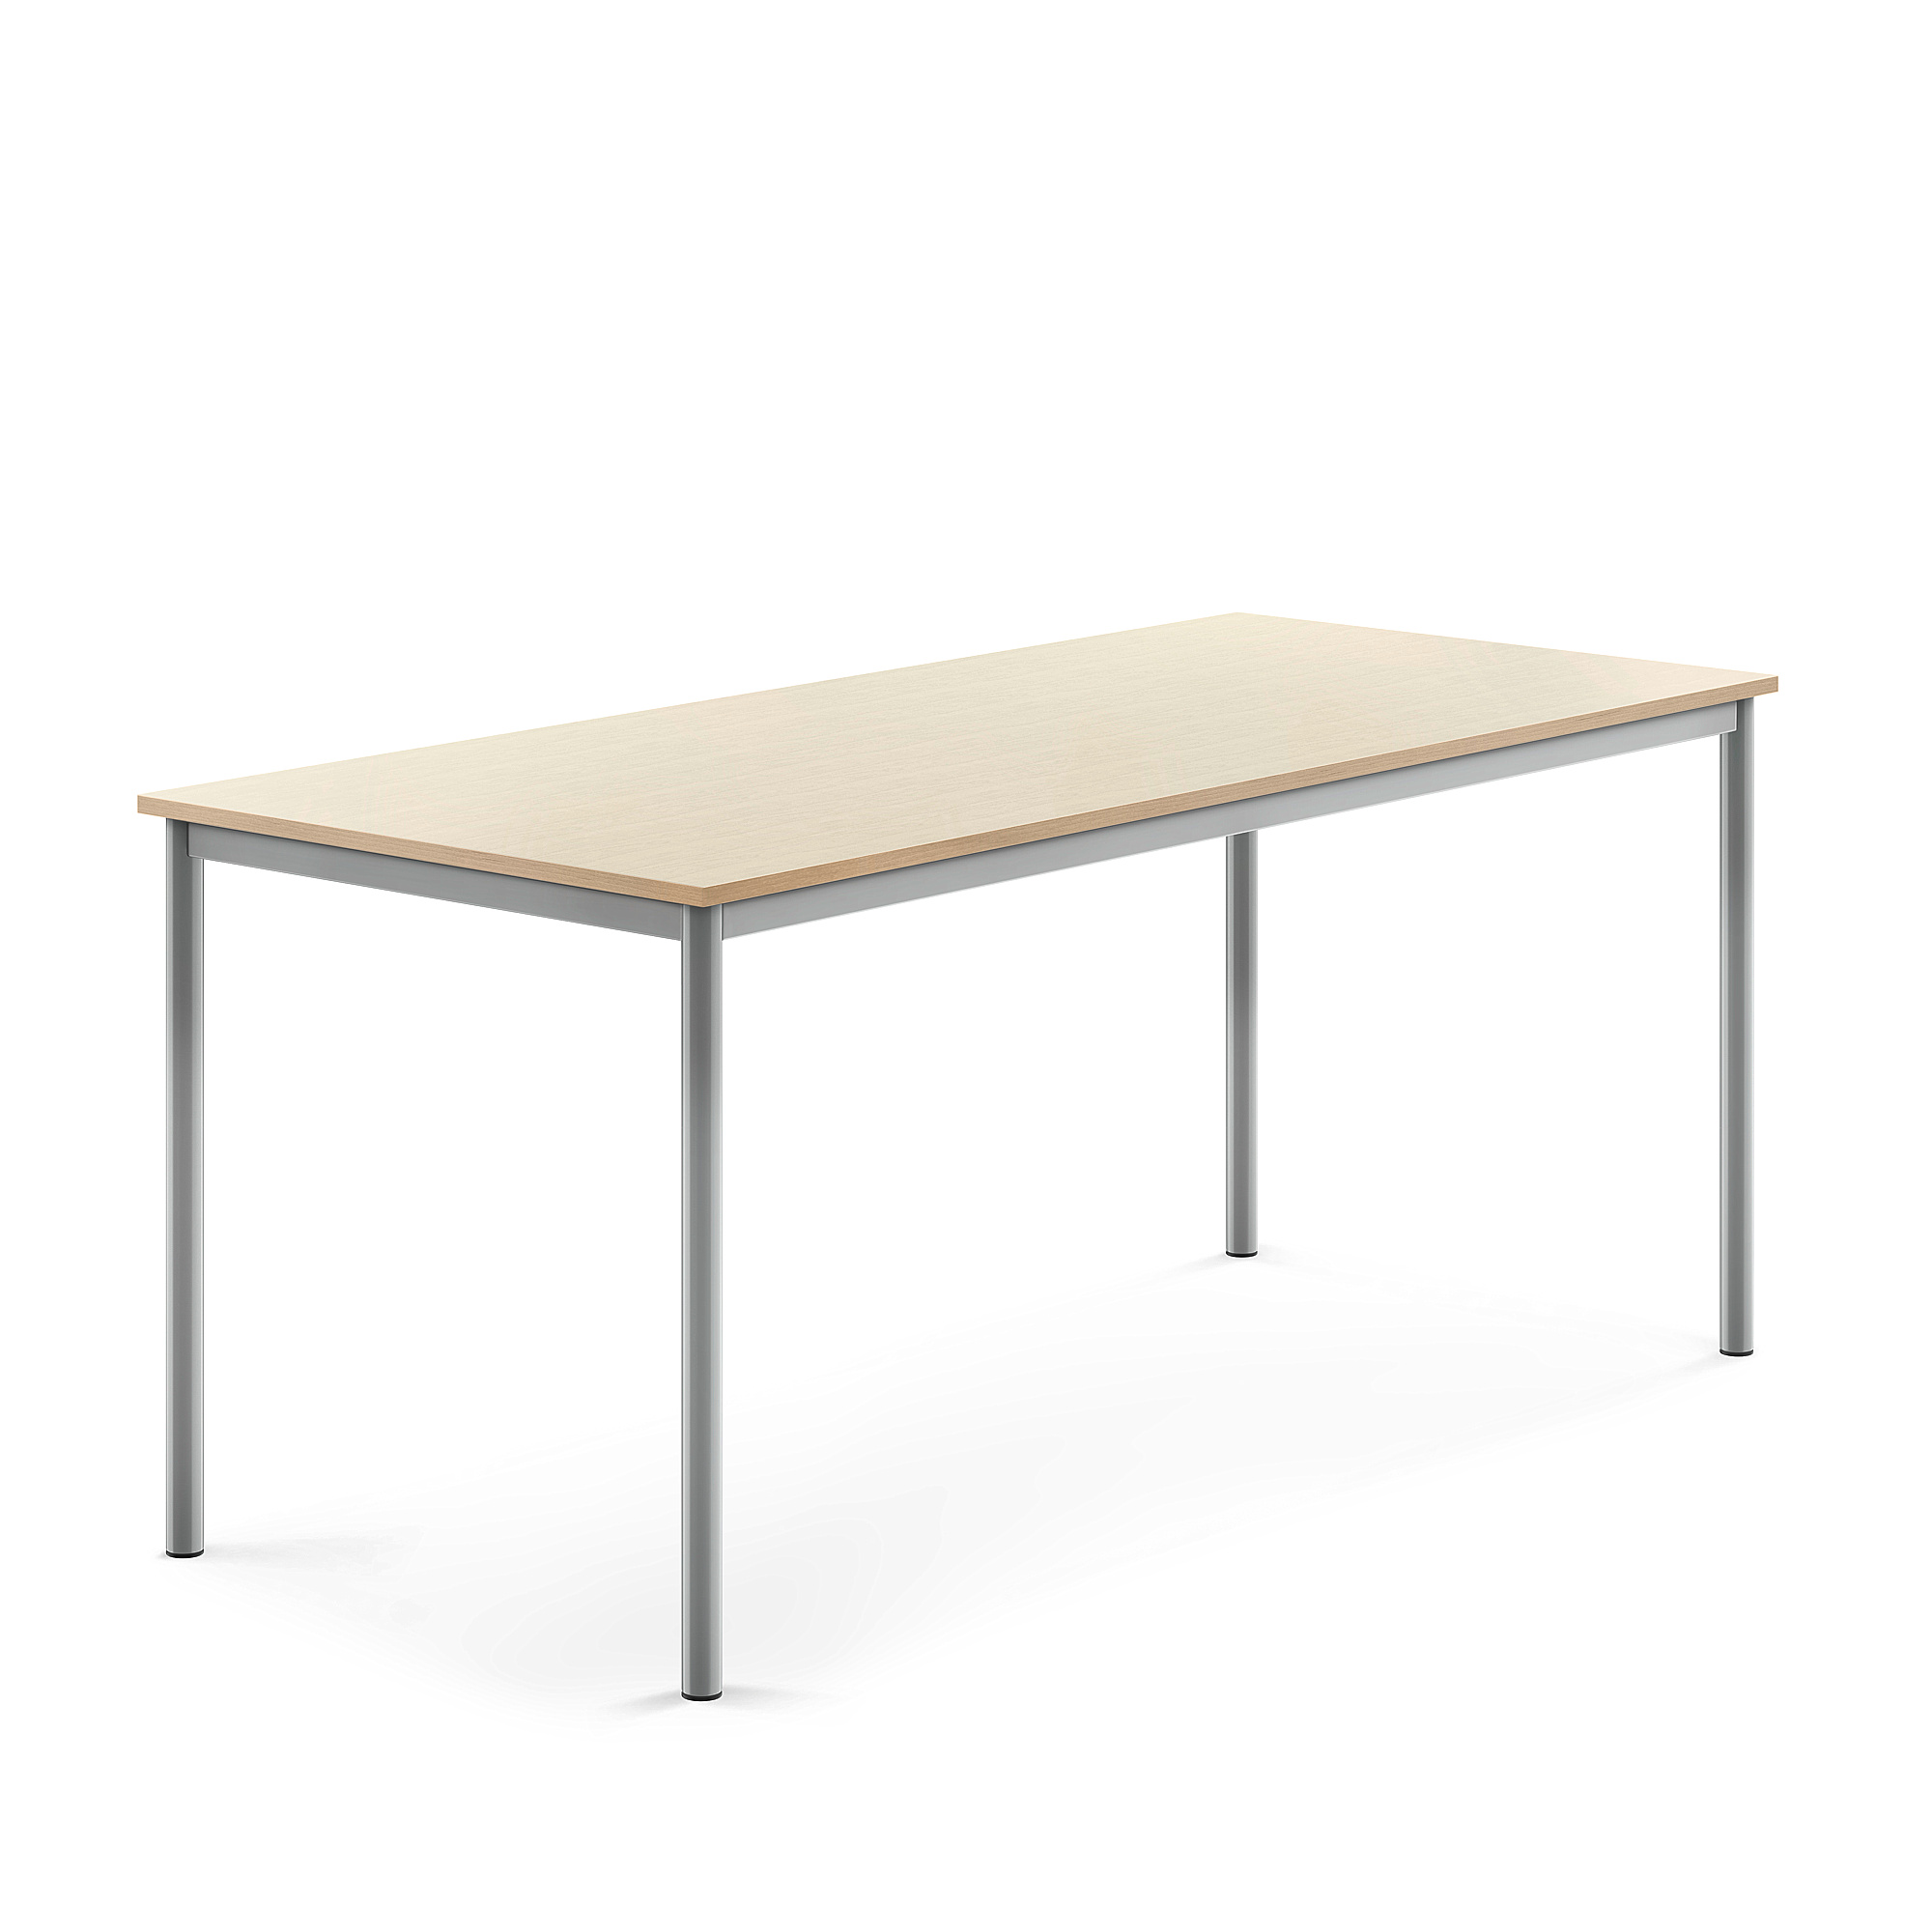 Stůl BORÅS, 1800x800x760 mm, stříbrné nohy, HPL deska, bříza